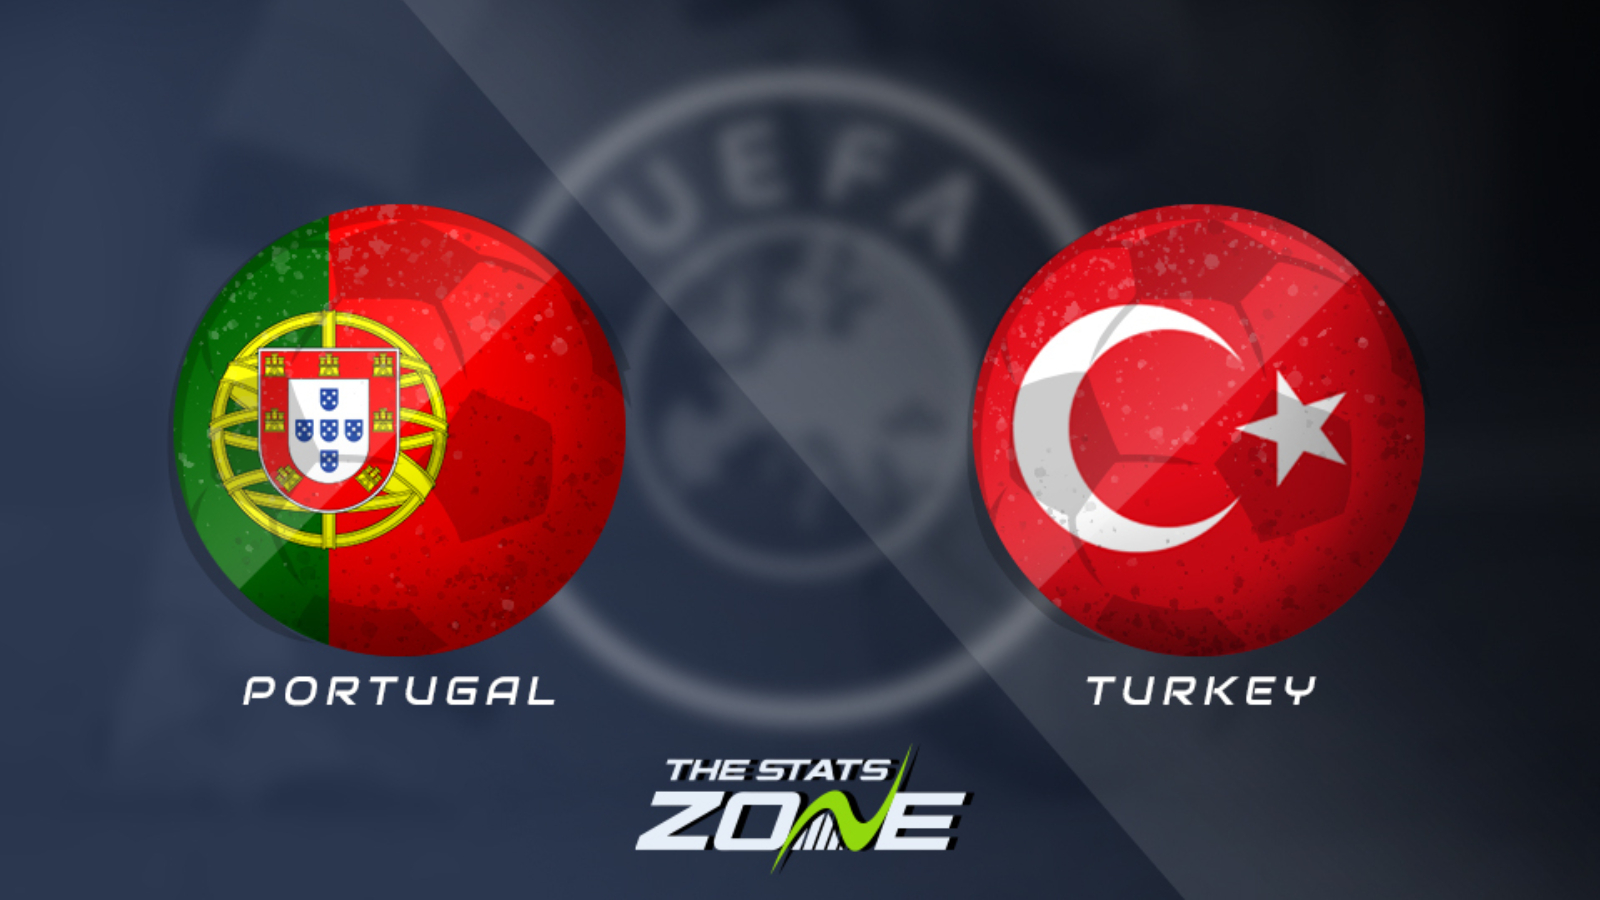 Portugal vs turki